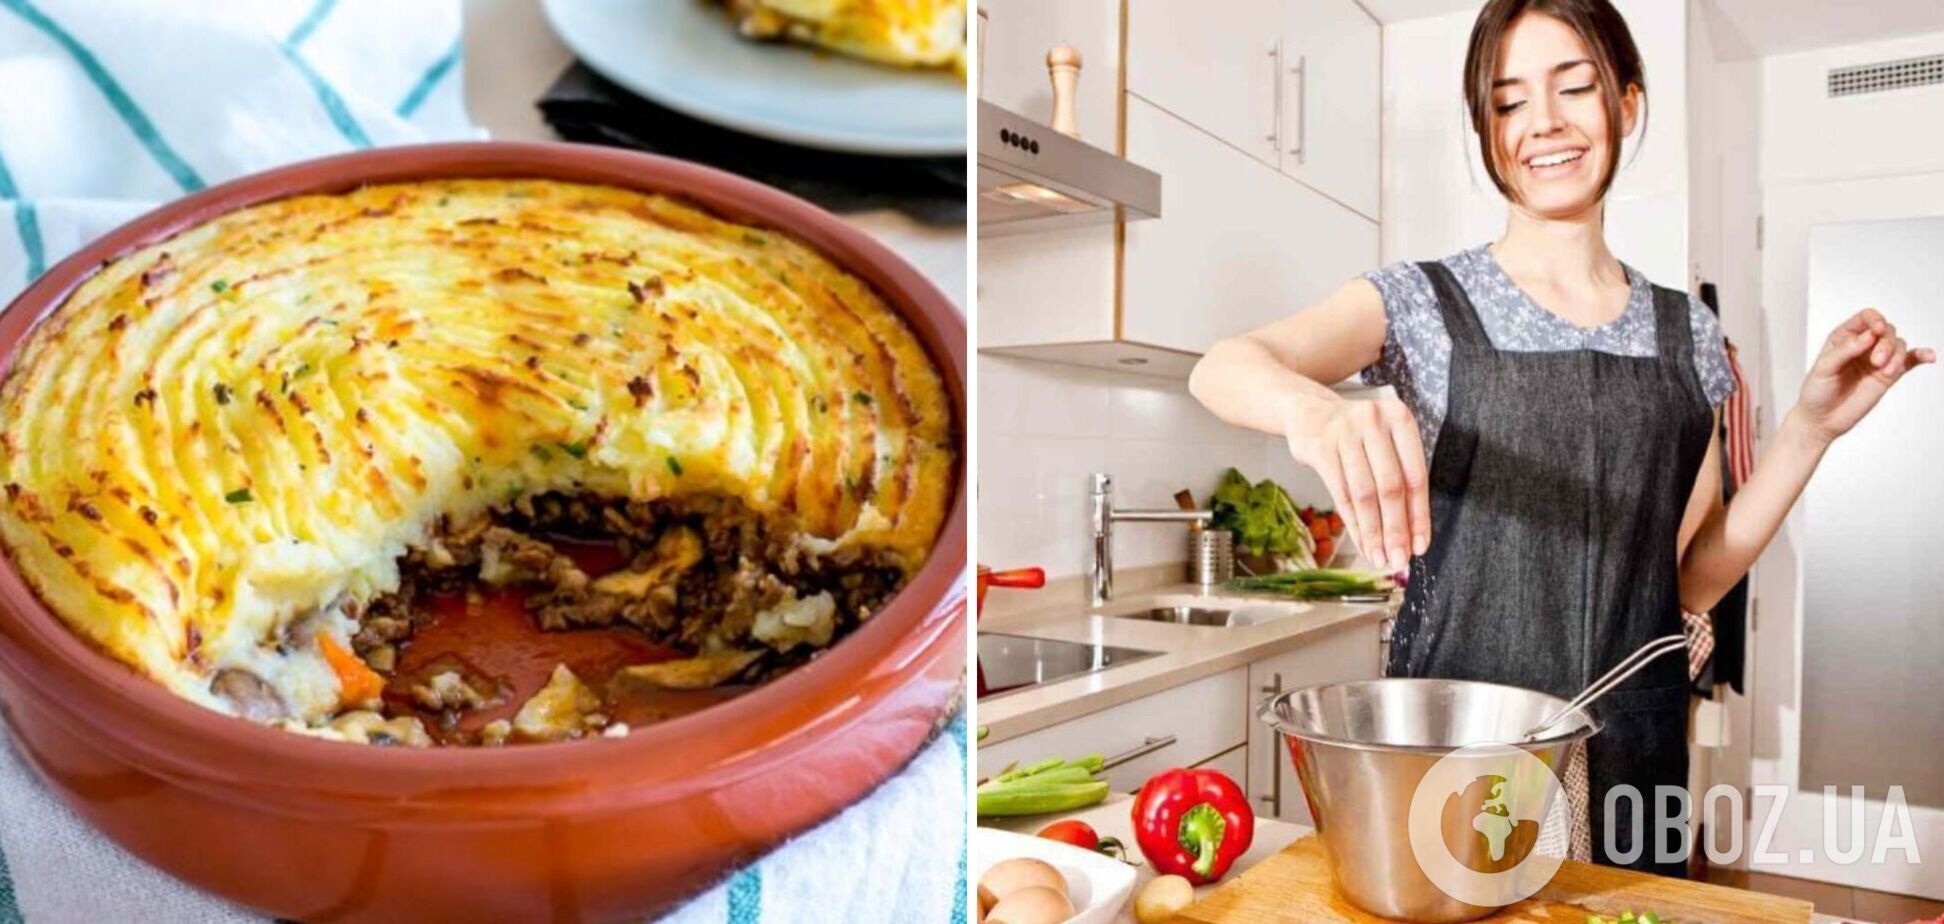 Пастуший пиріг з картоплі нашвидкуруч: як приготувати універсальну страву